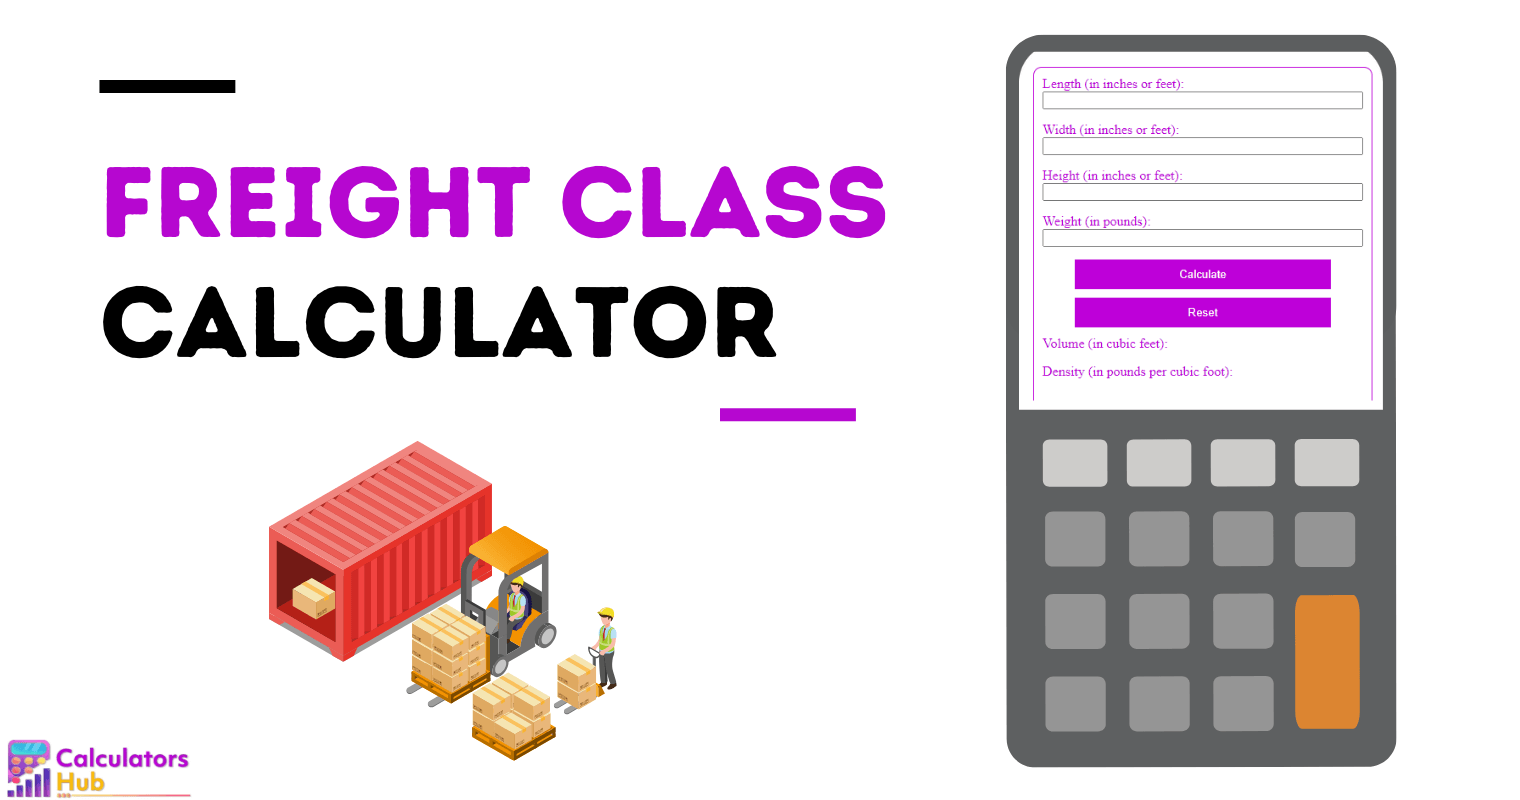 Freight Class Calculator